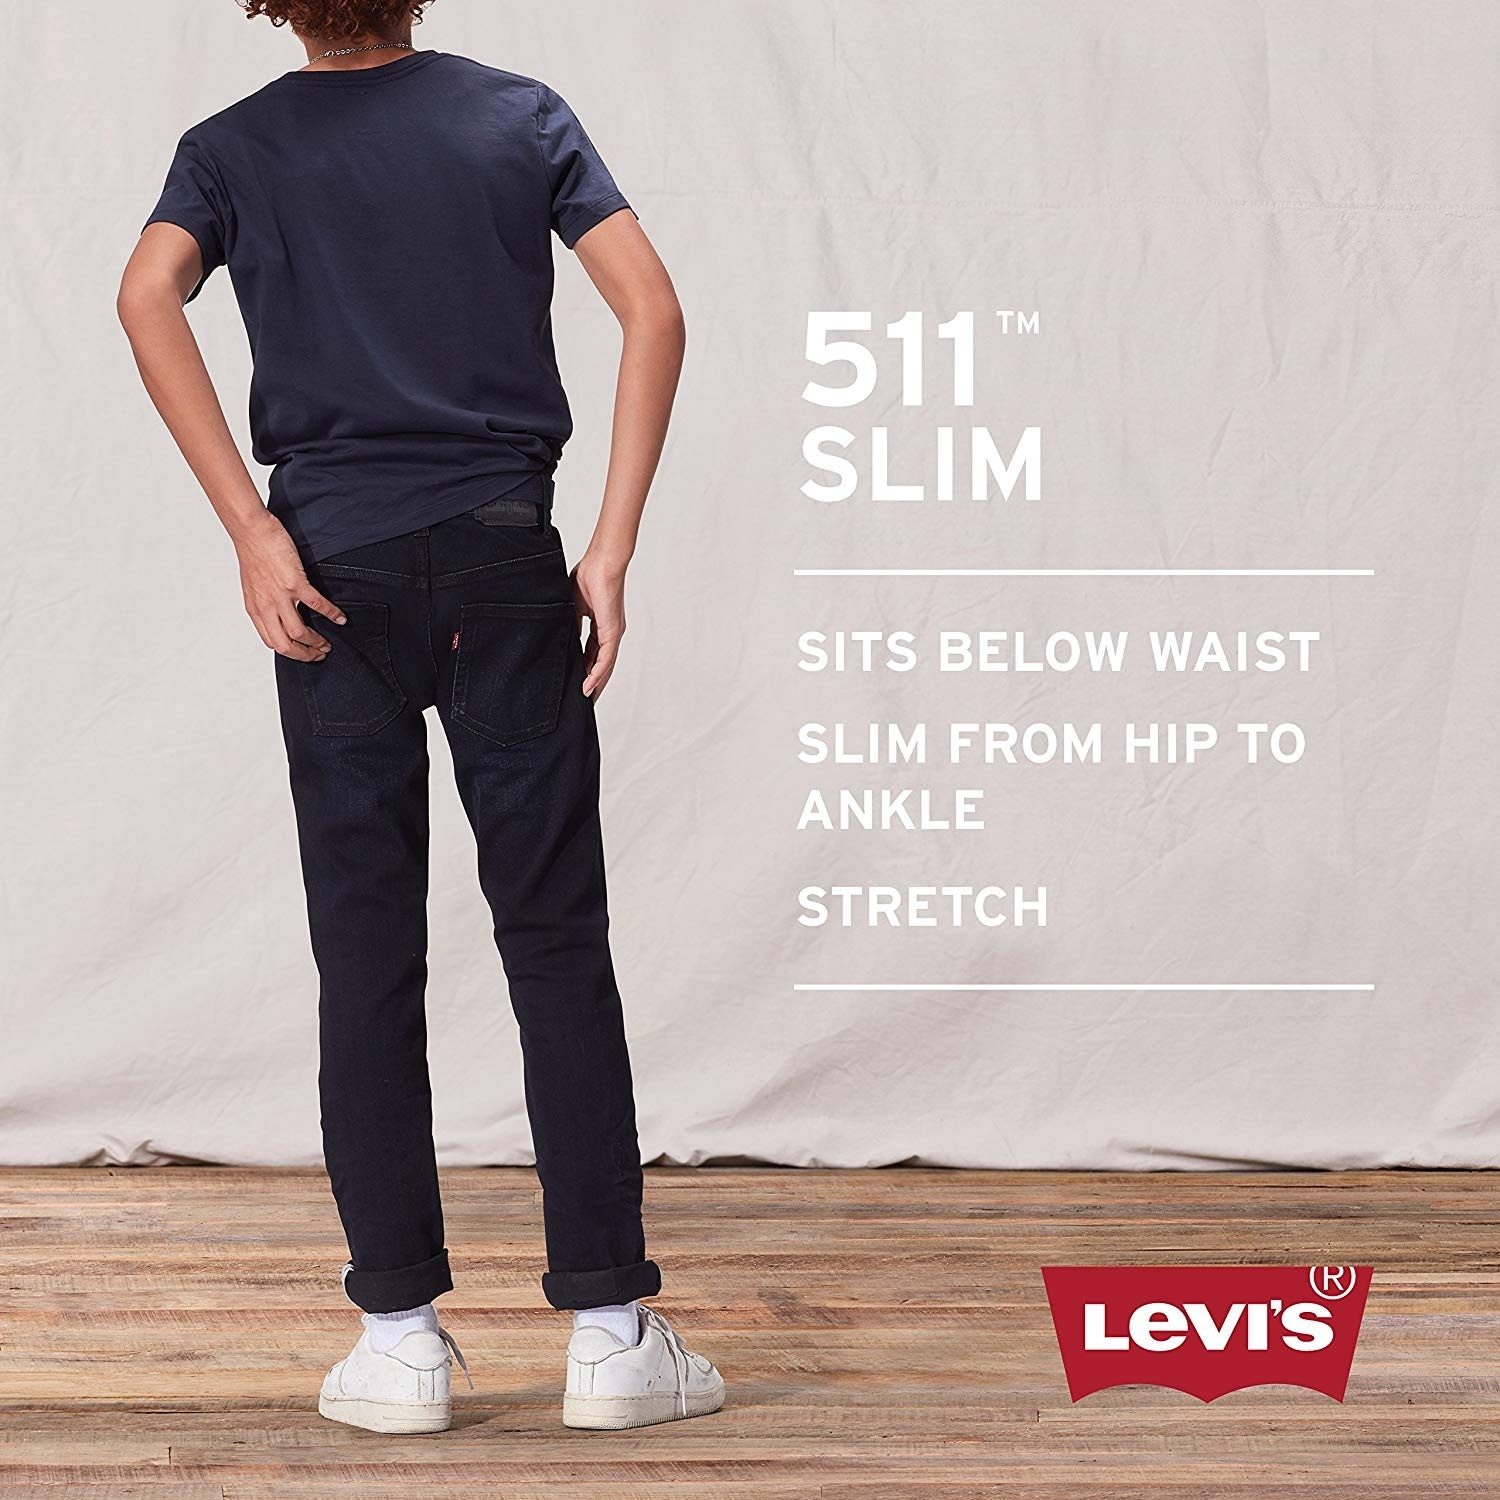 levi jeans size 16